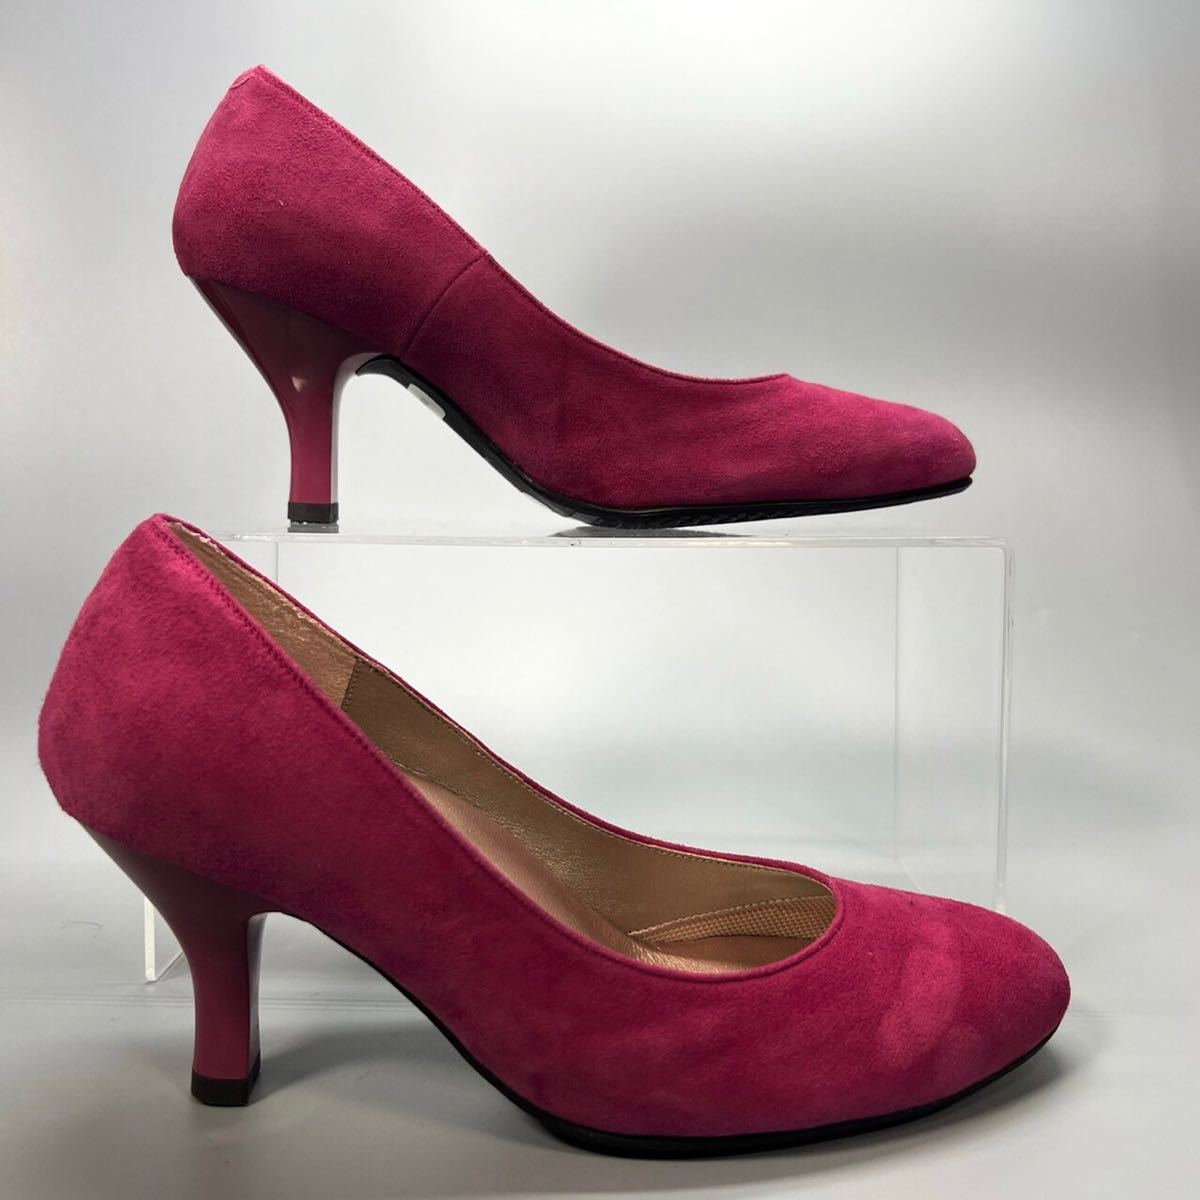 Wacoal Wacoal sakses walk туфли-лодочки замша 22 1/2EE 22.5cm женская обувь обувь розовый 